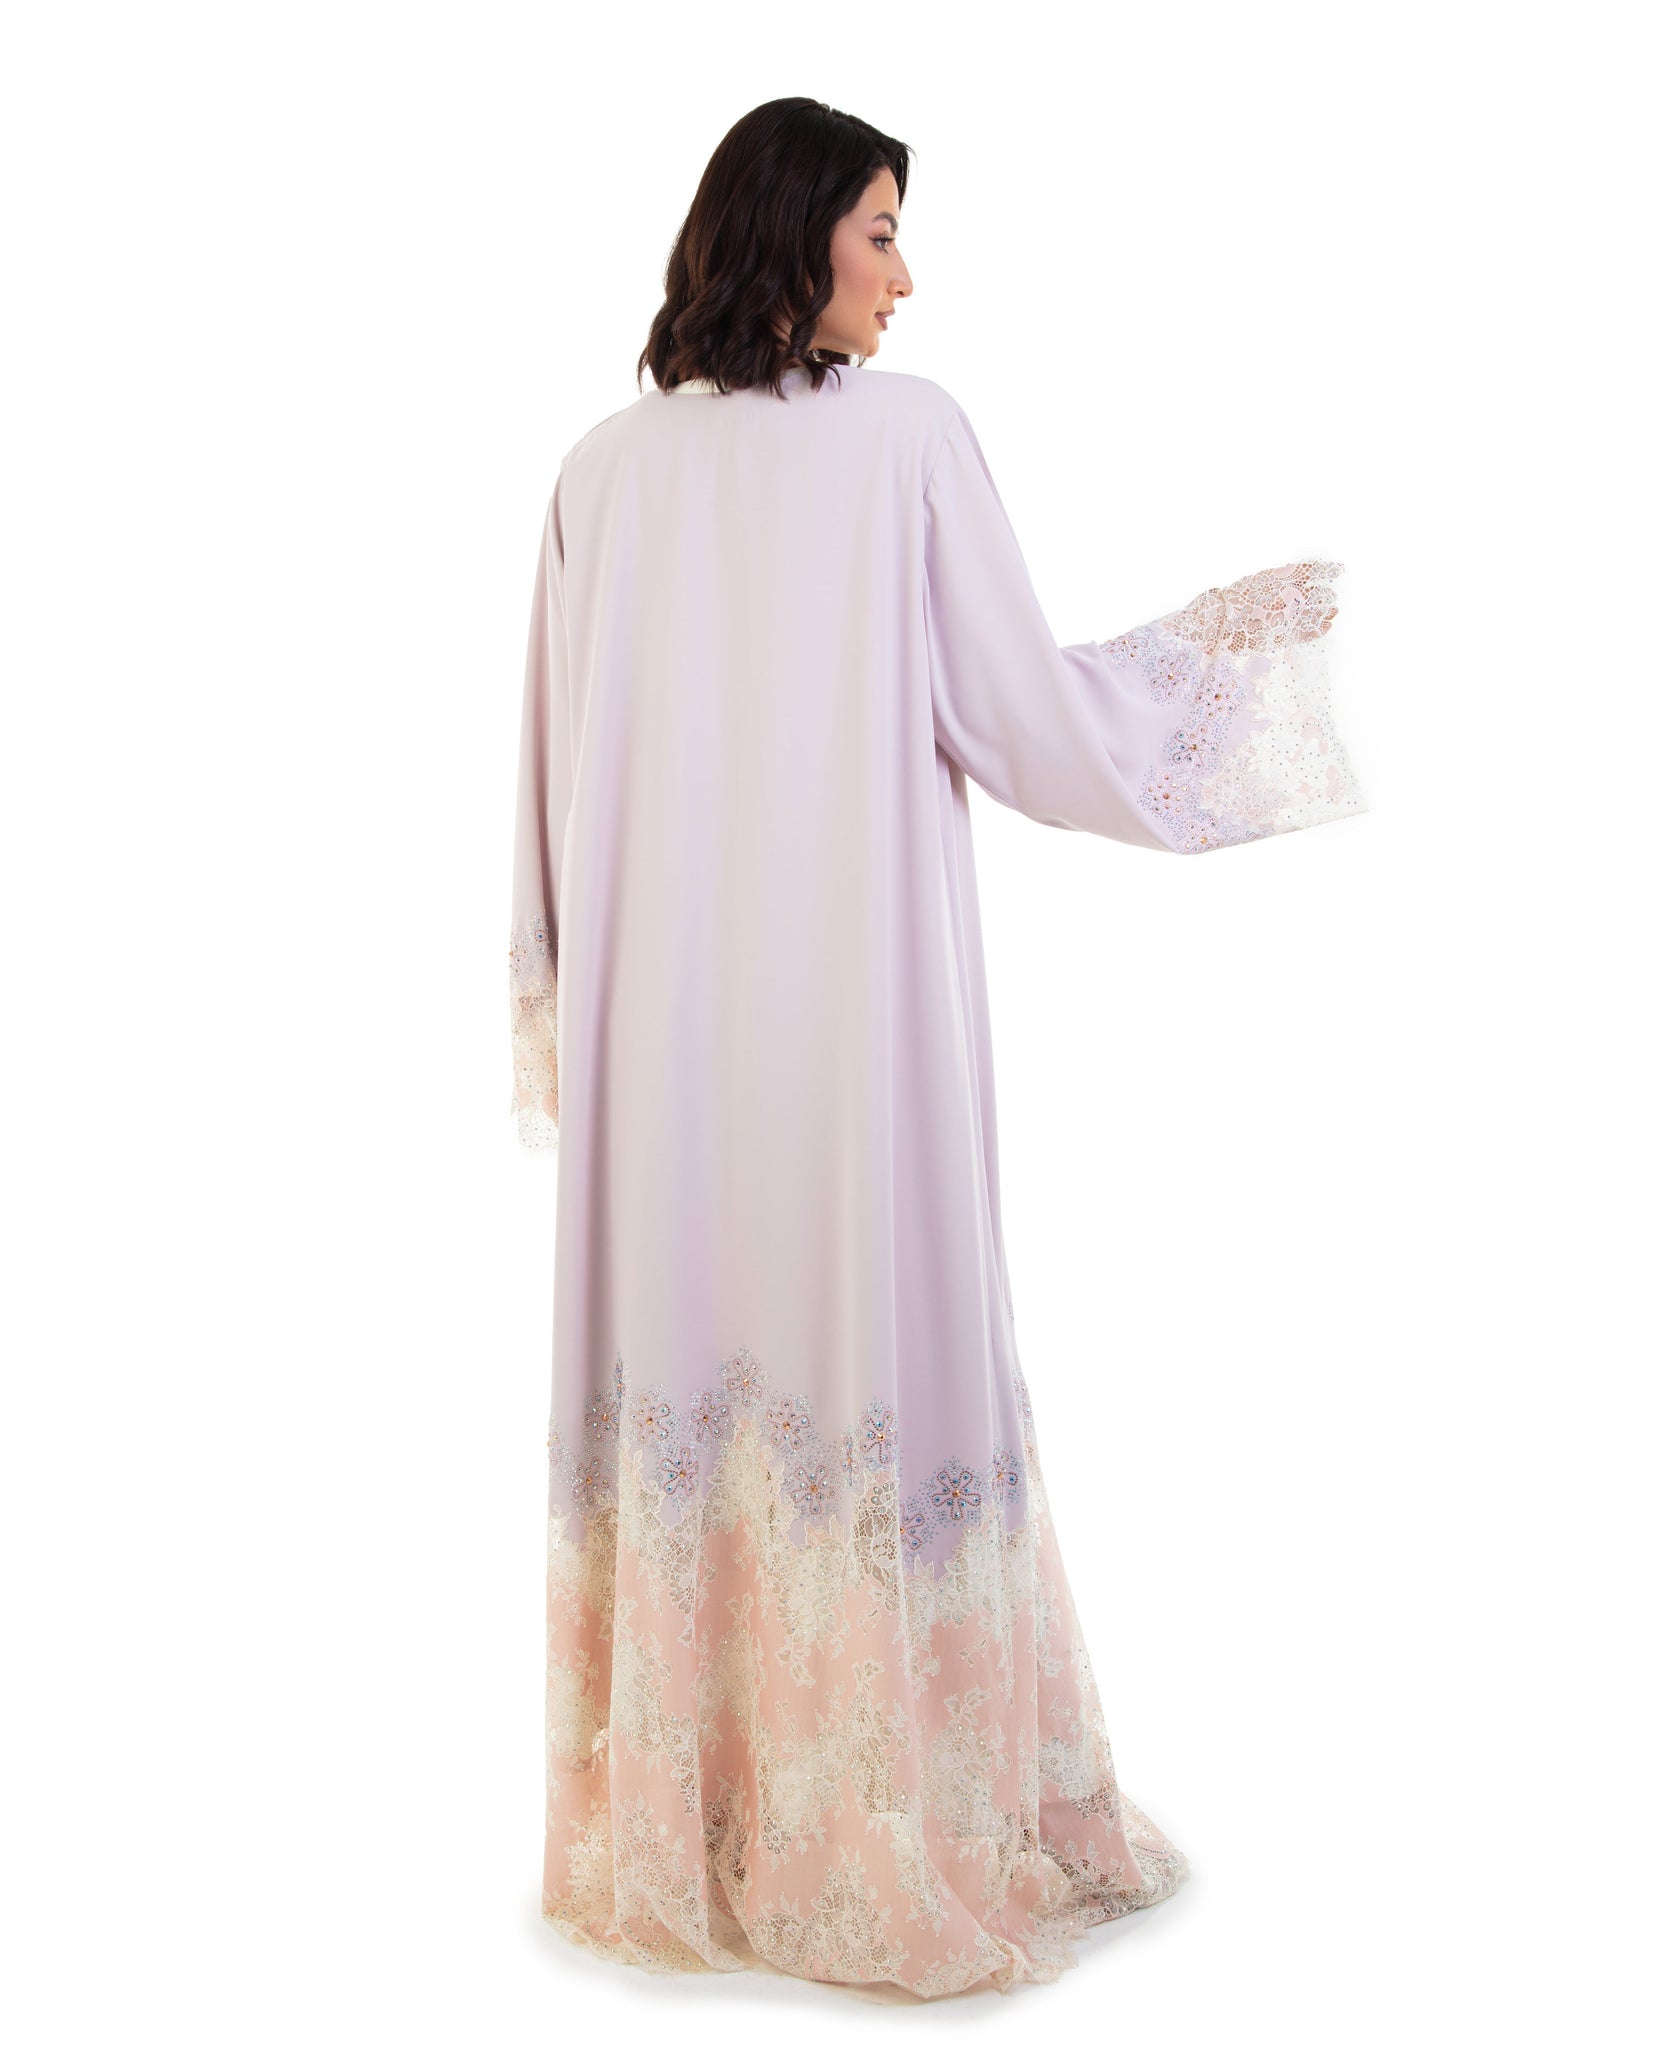 Hanayen Closed Crysalized Abaya Dress With Lace Insert